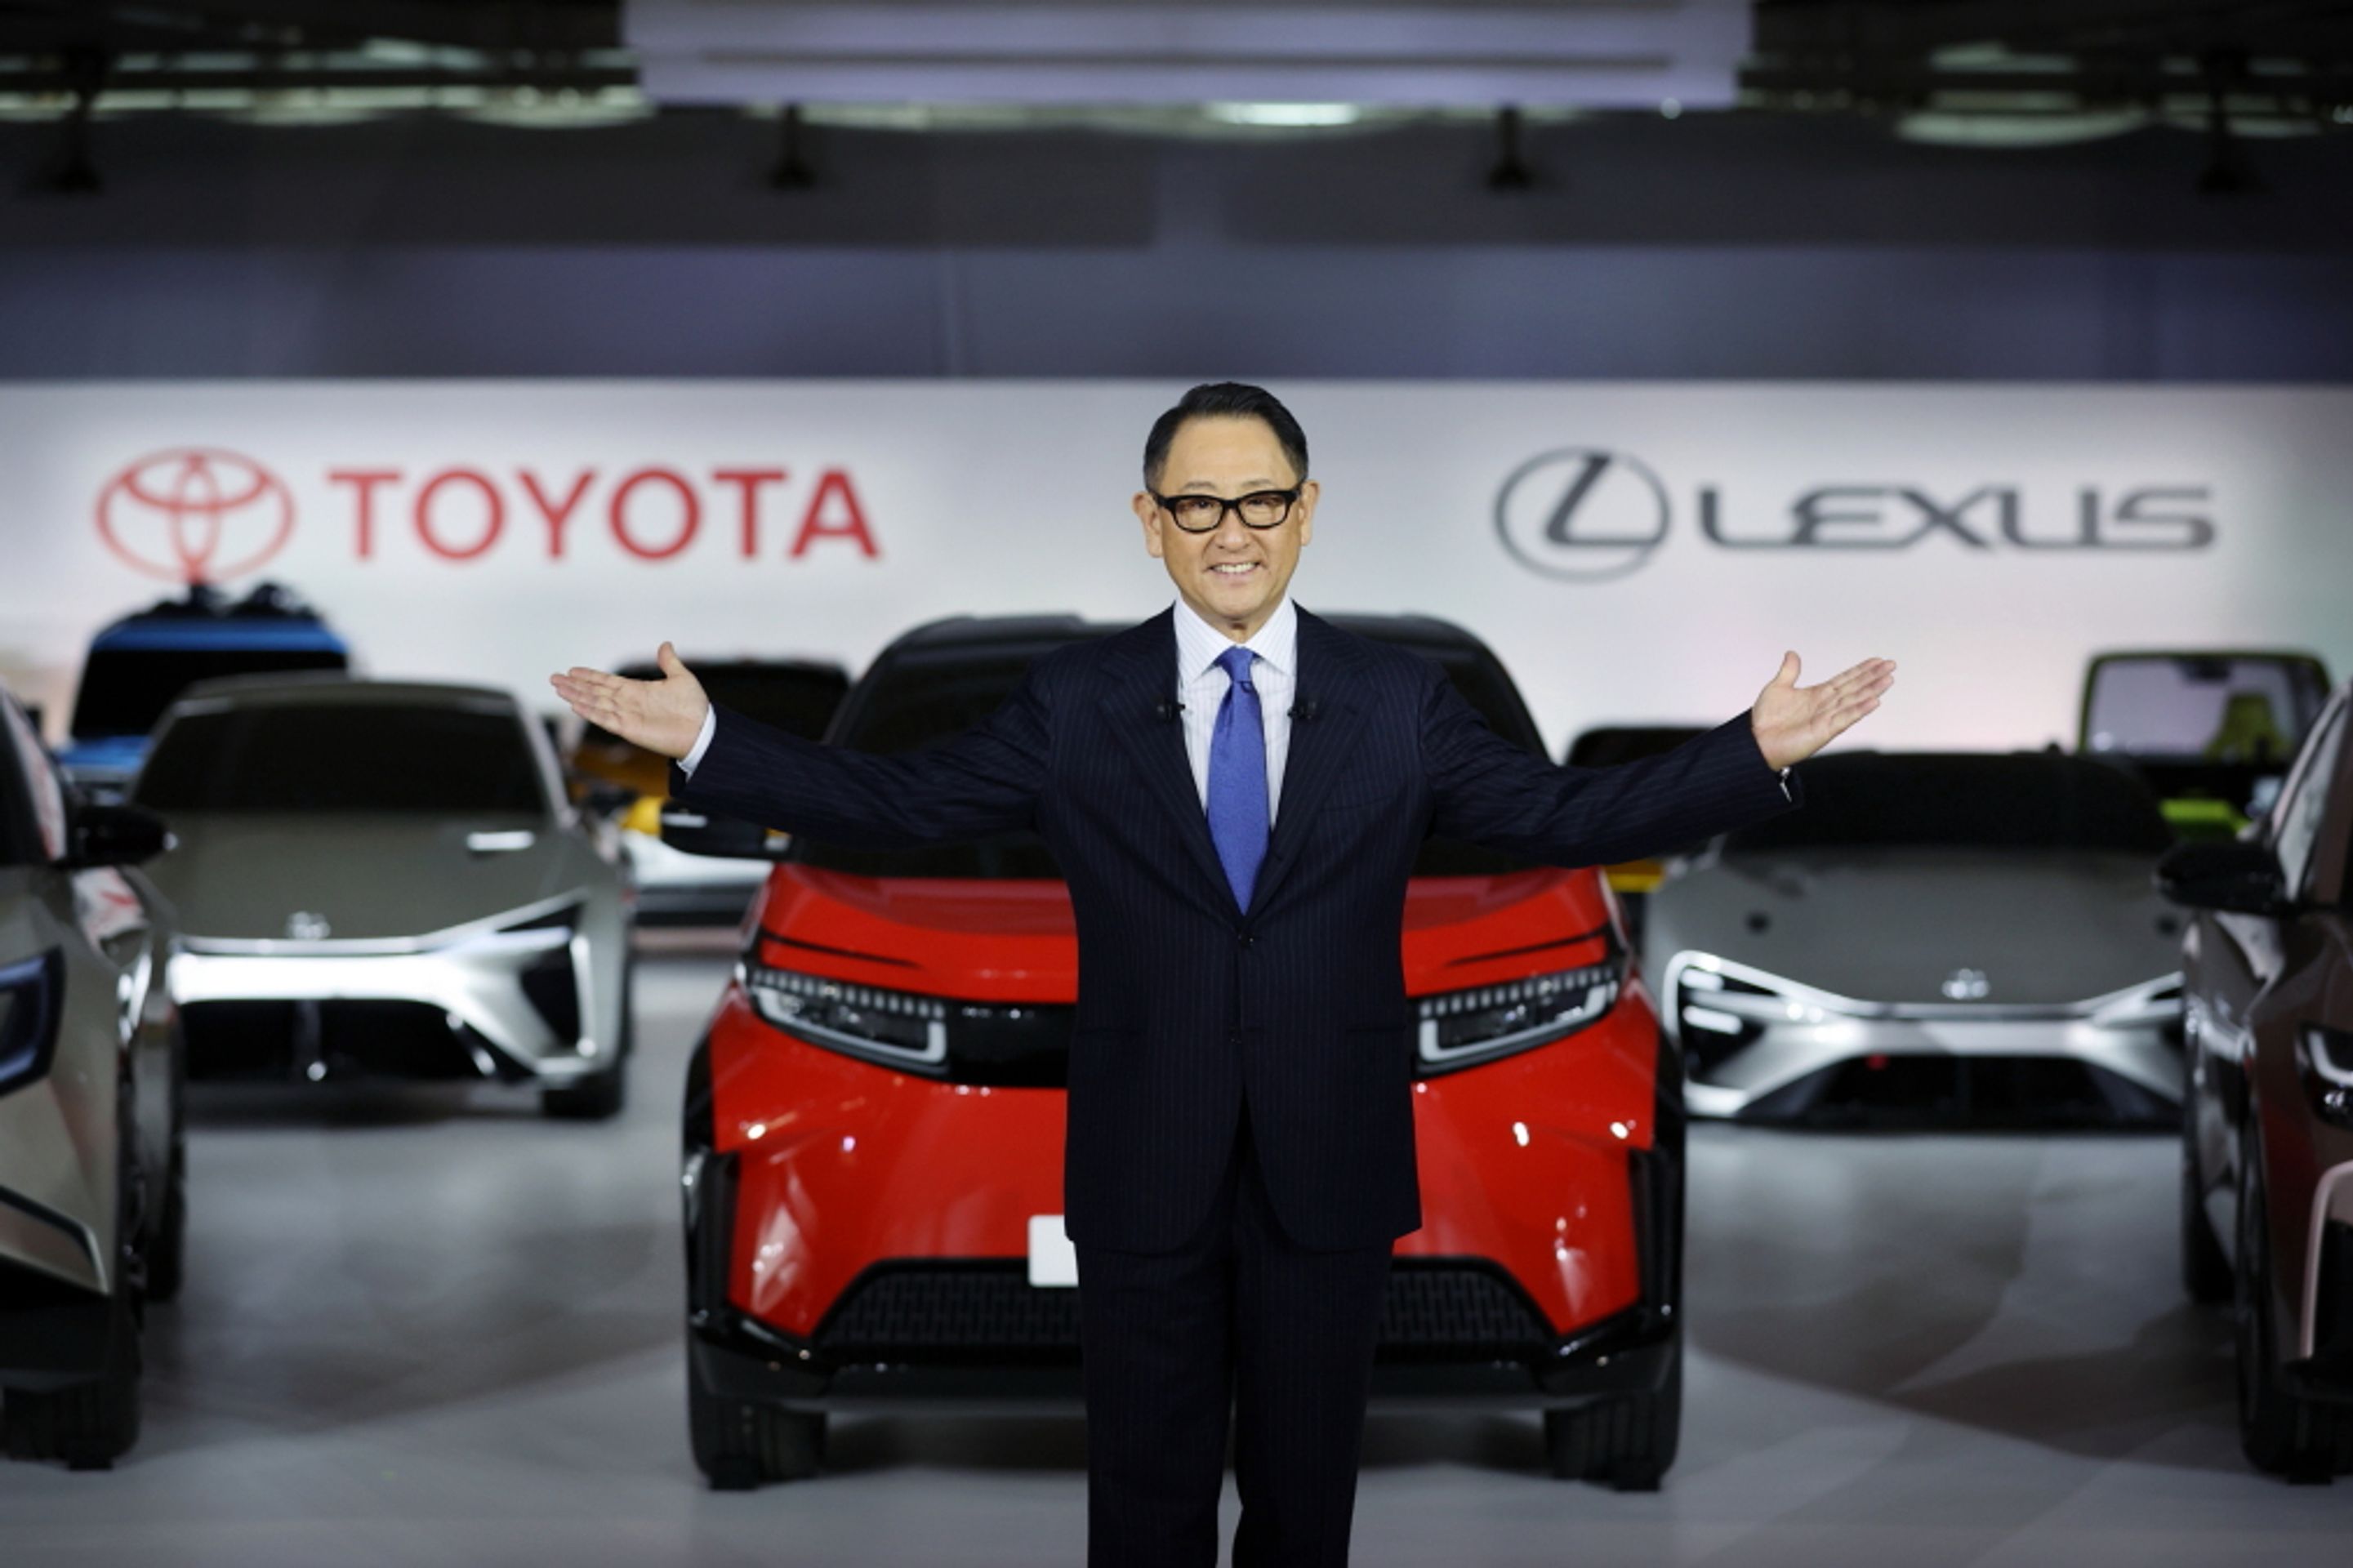 Budoucí bateriové vozy značek Toyota a Lexus - Takhle vypadá bateriová budoucnost podle značek Toyota a Lexus (2/23)